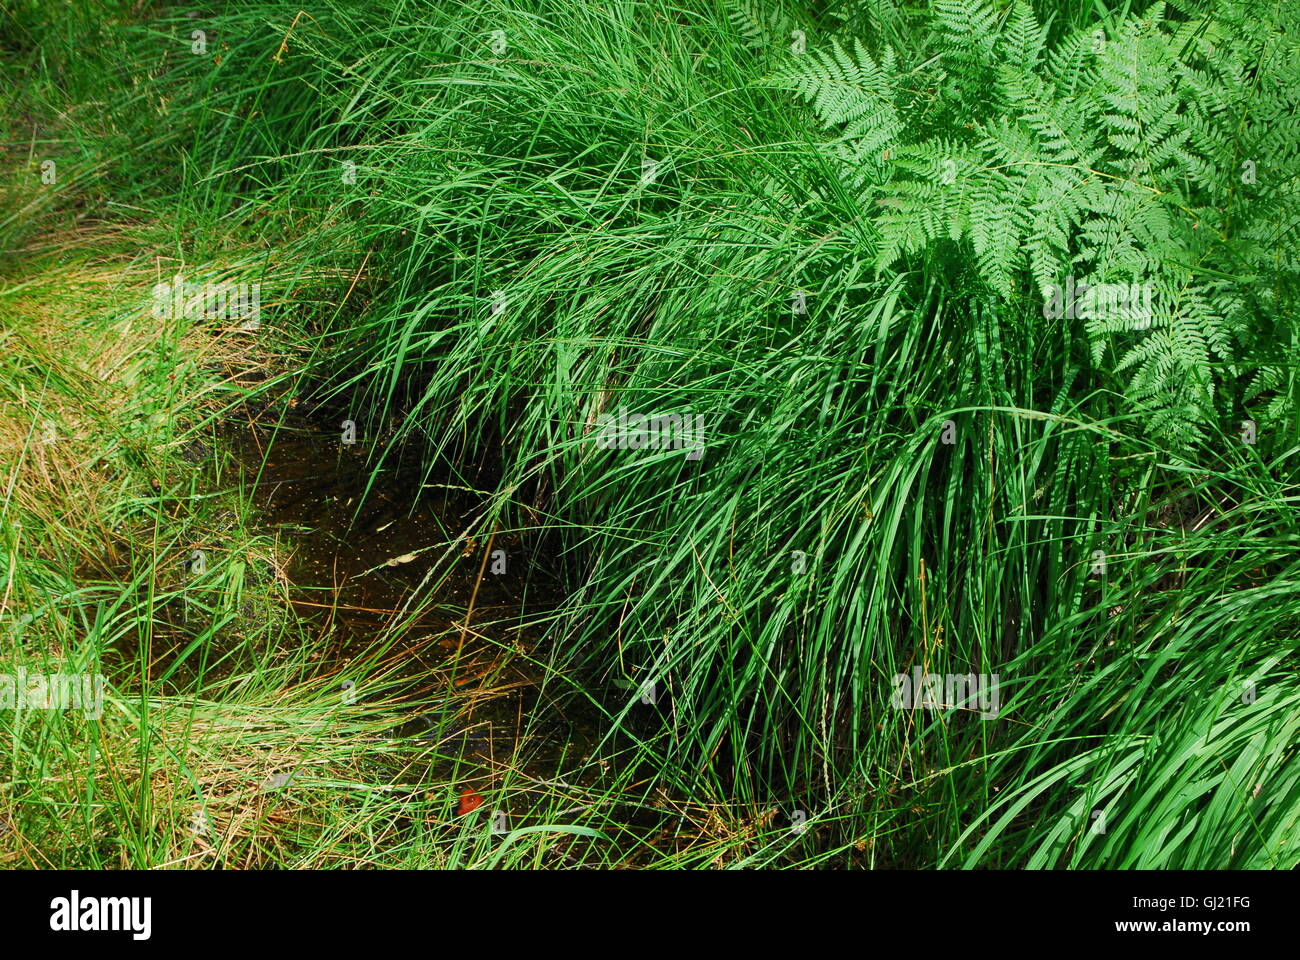 Forest grass, grass, green grass Stock Photo